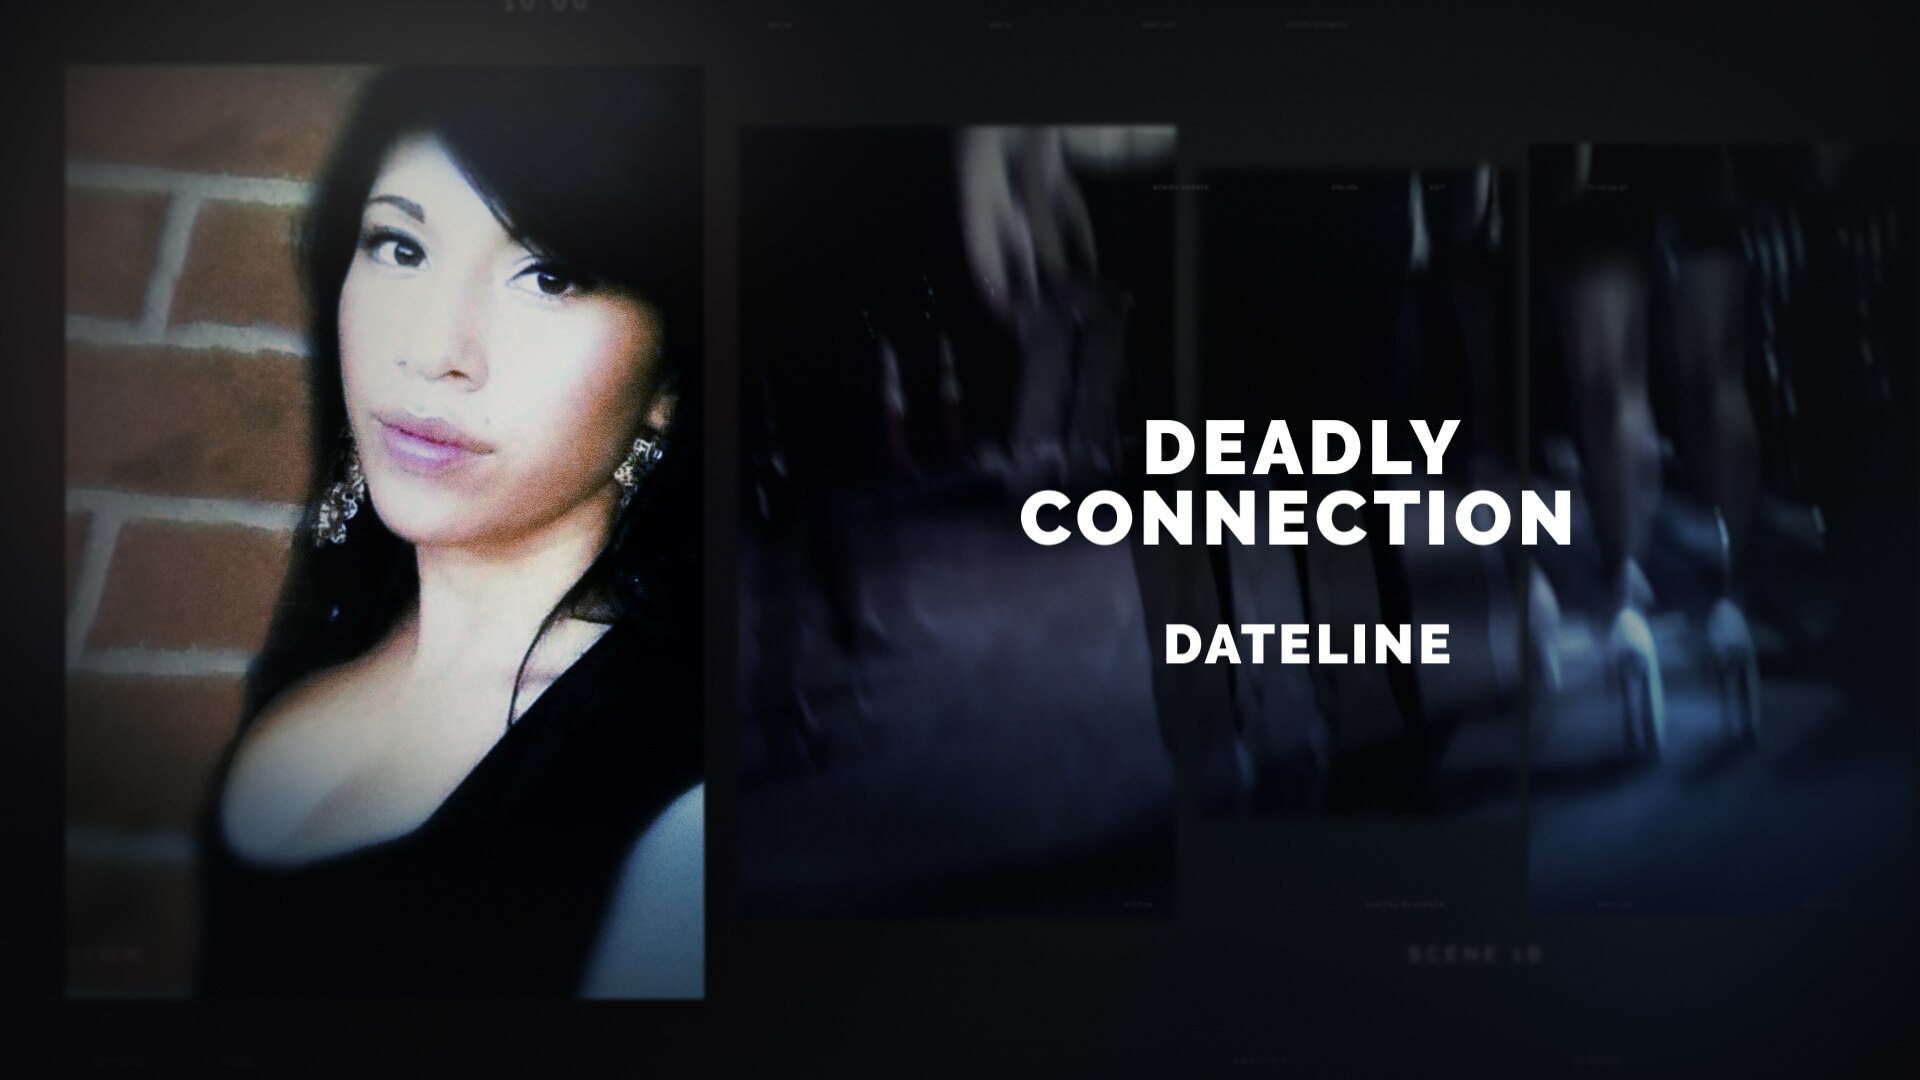 Watch Dateline Episode: Deadly Connection - NBC.com.